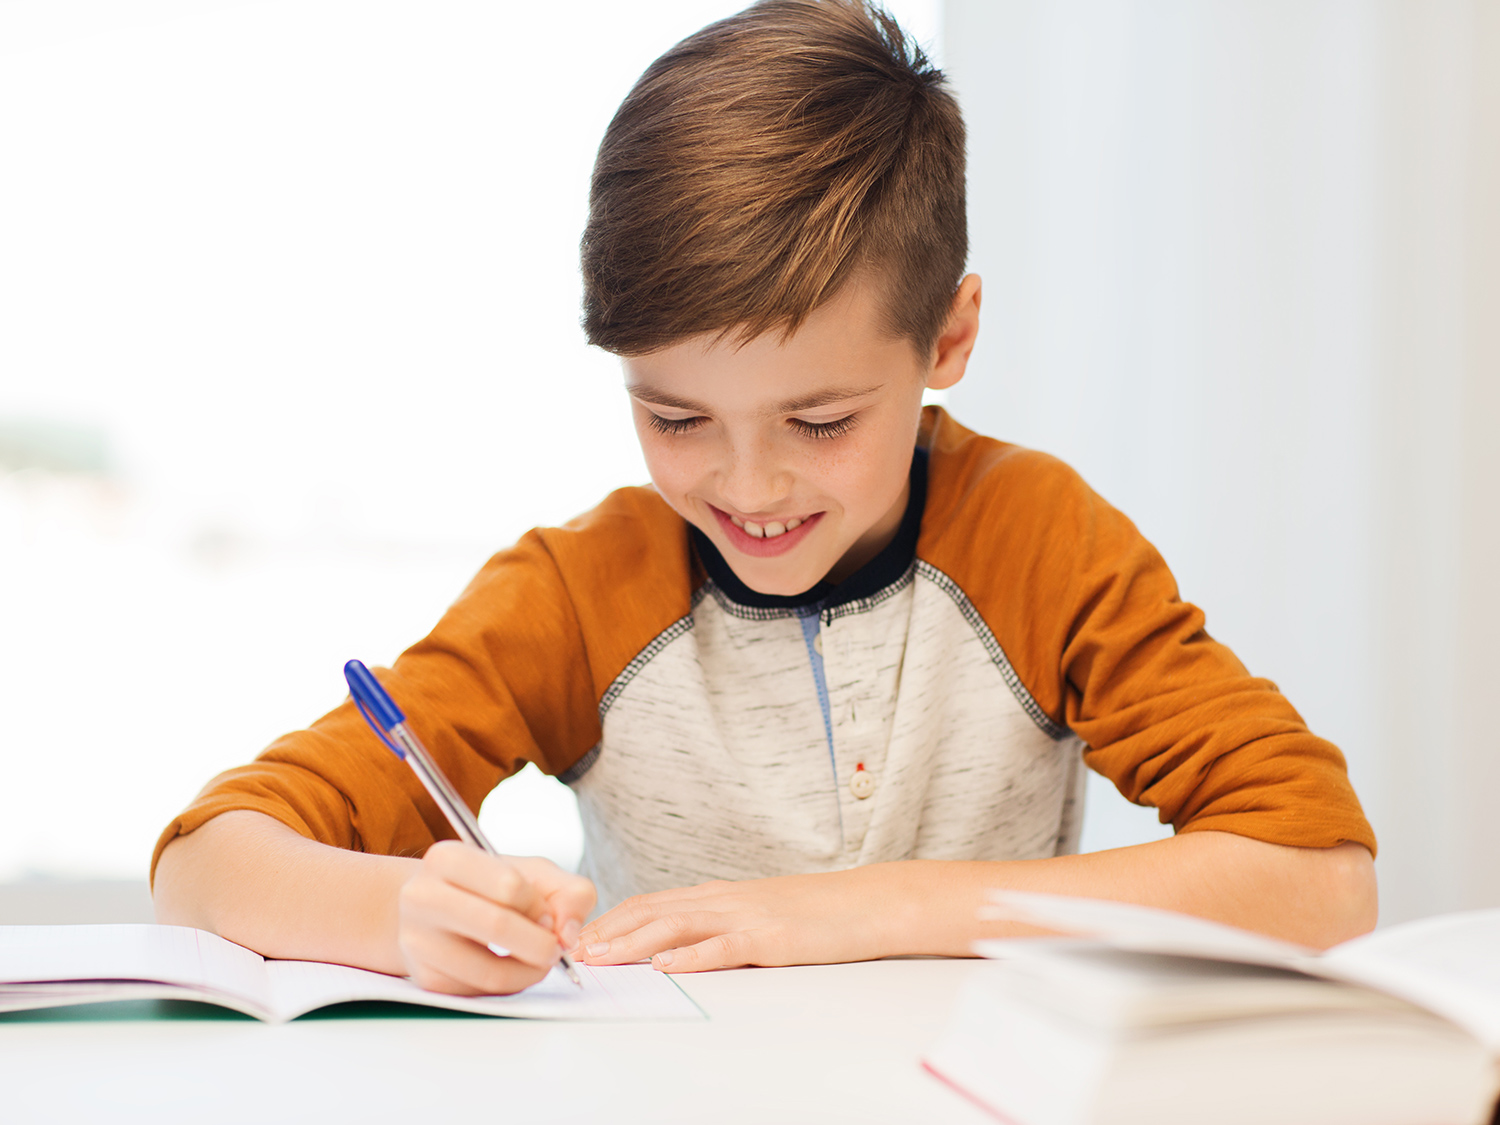 A child writing